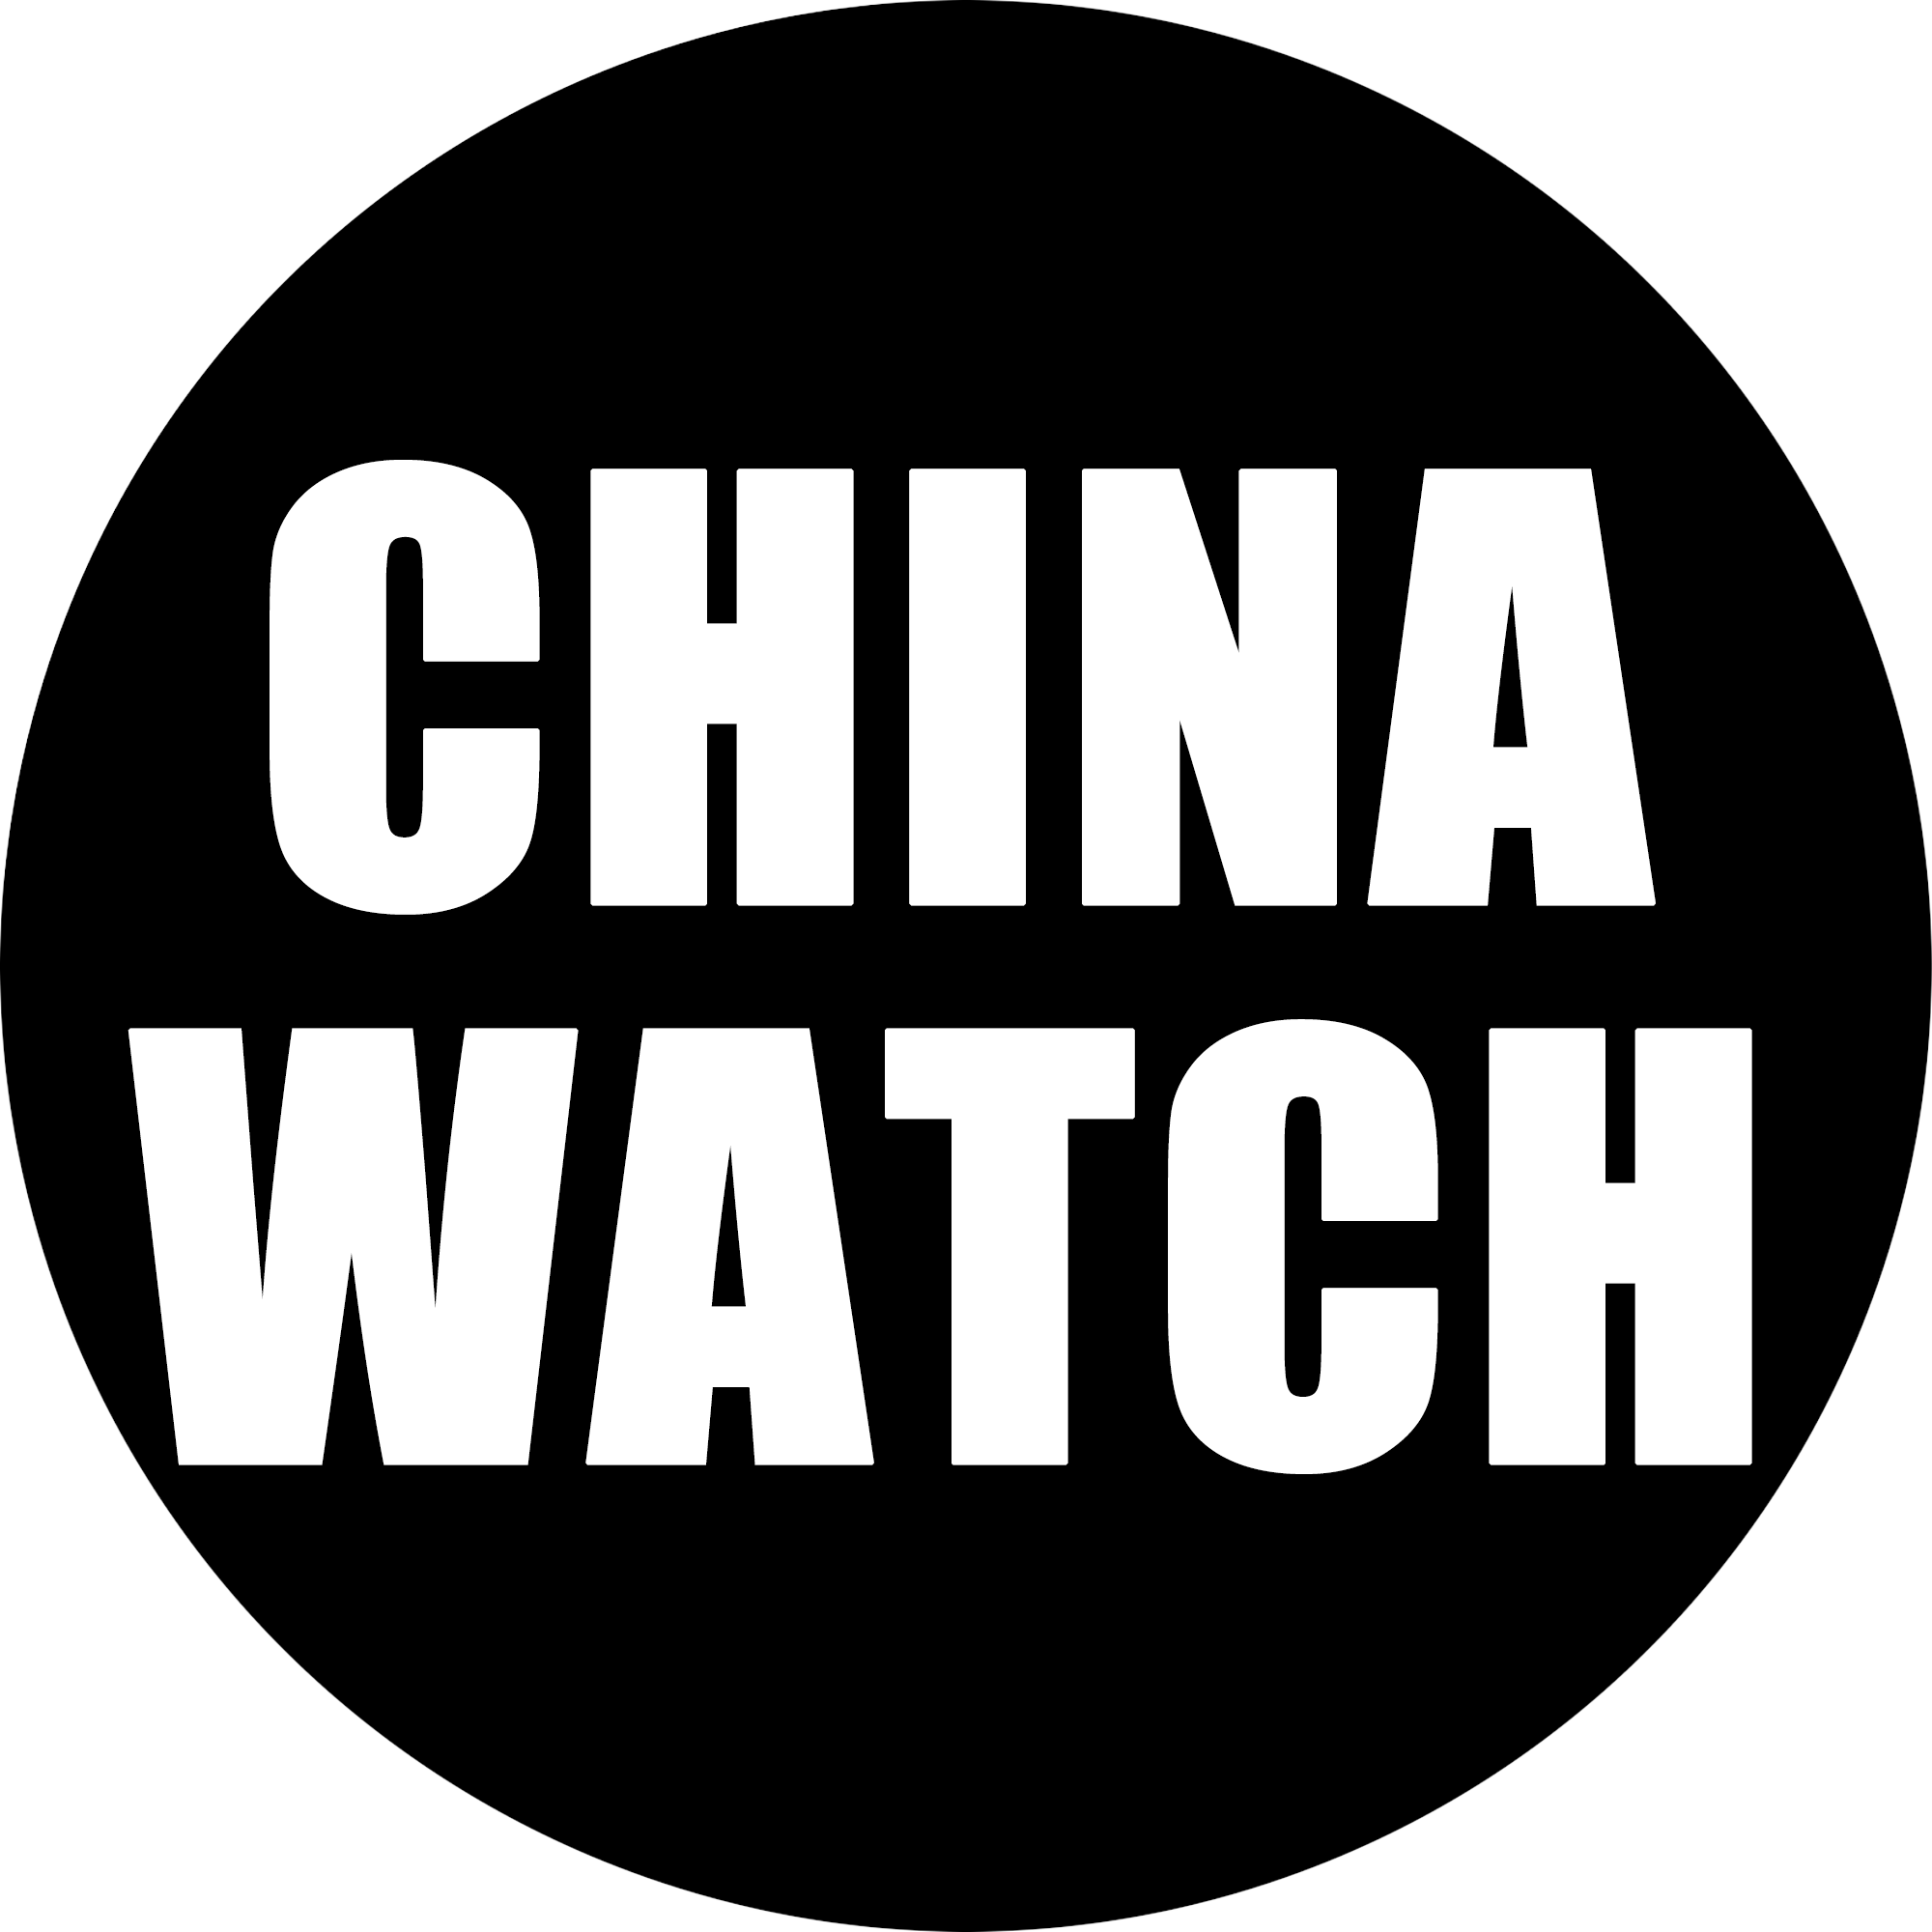 CHINA WATCH